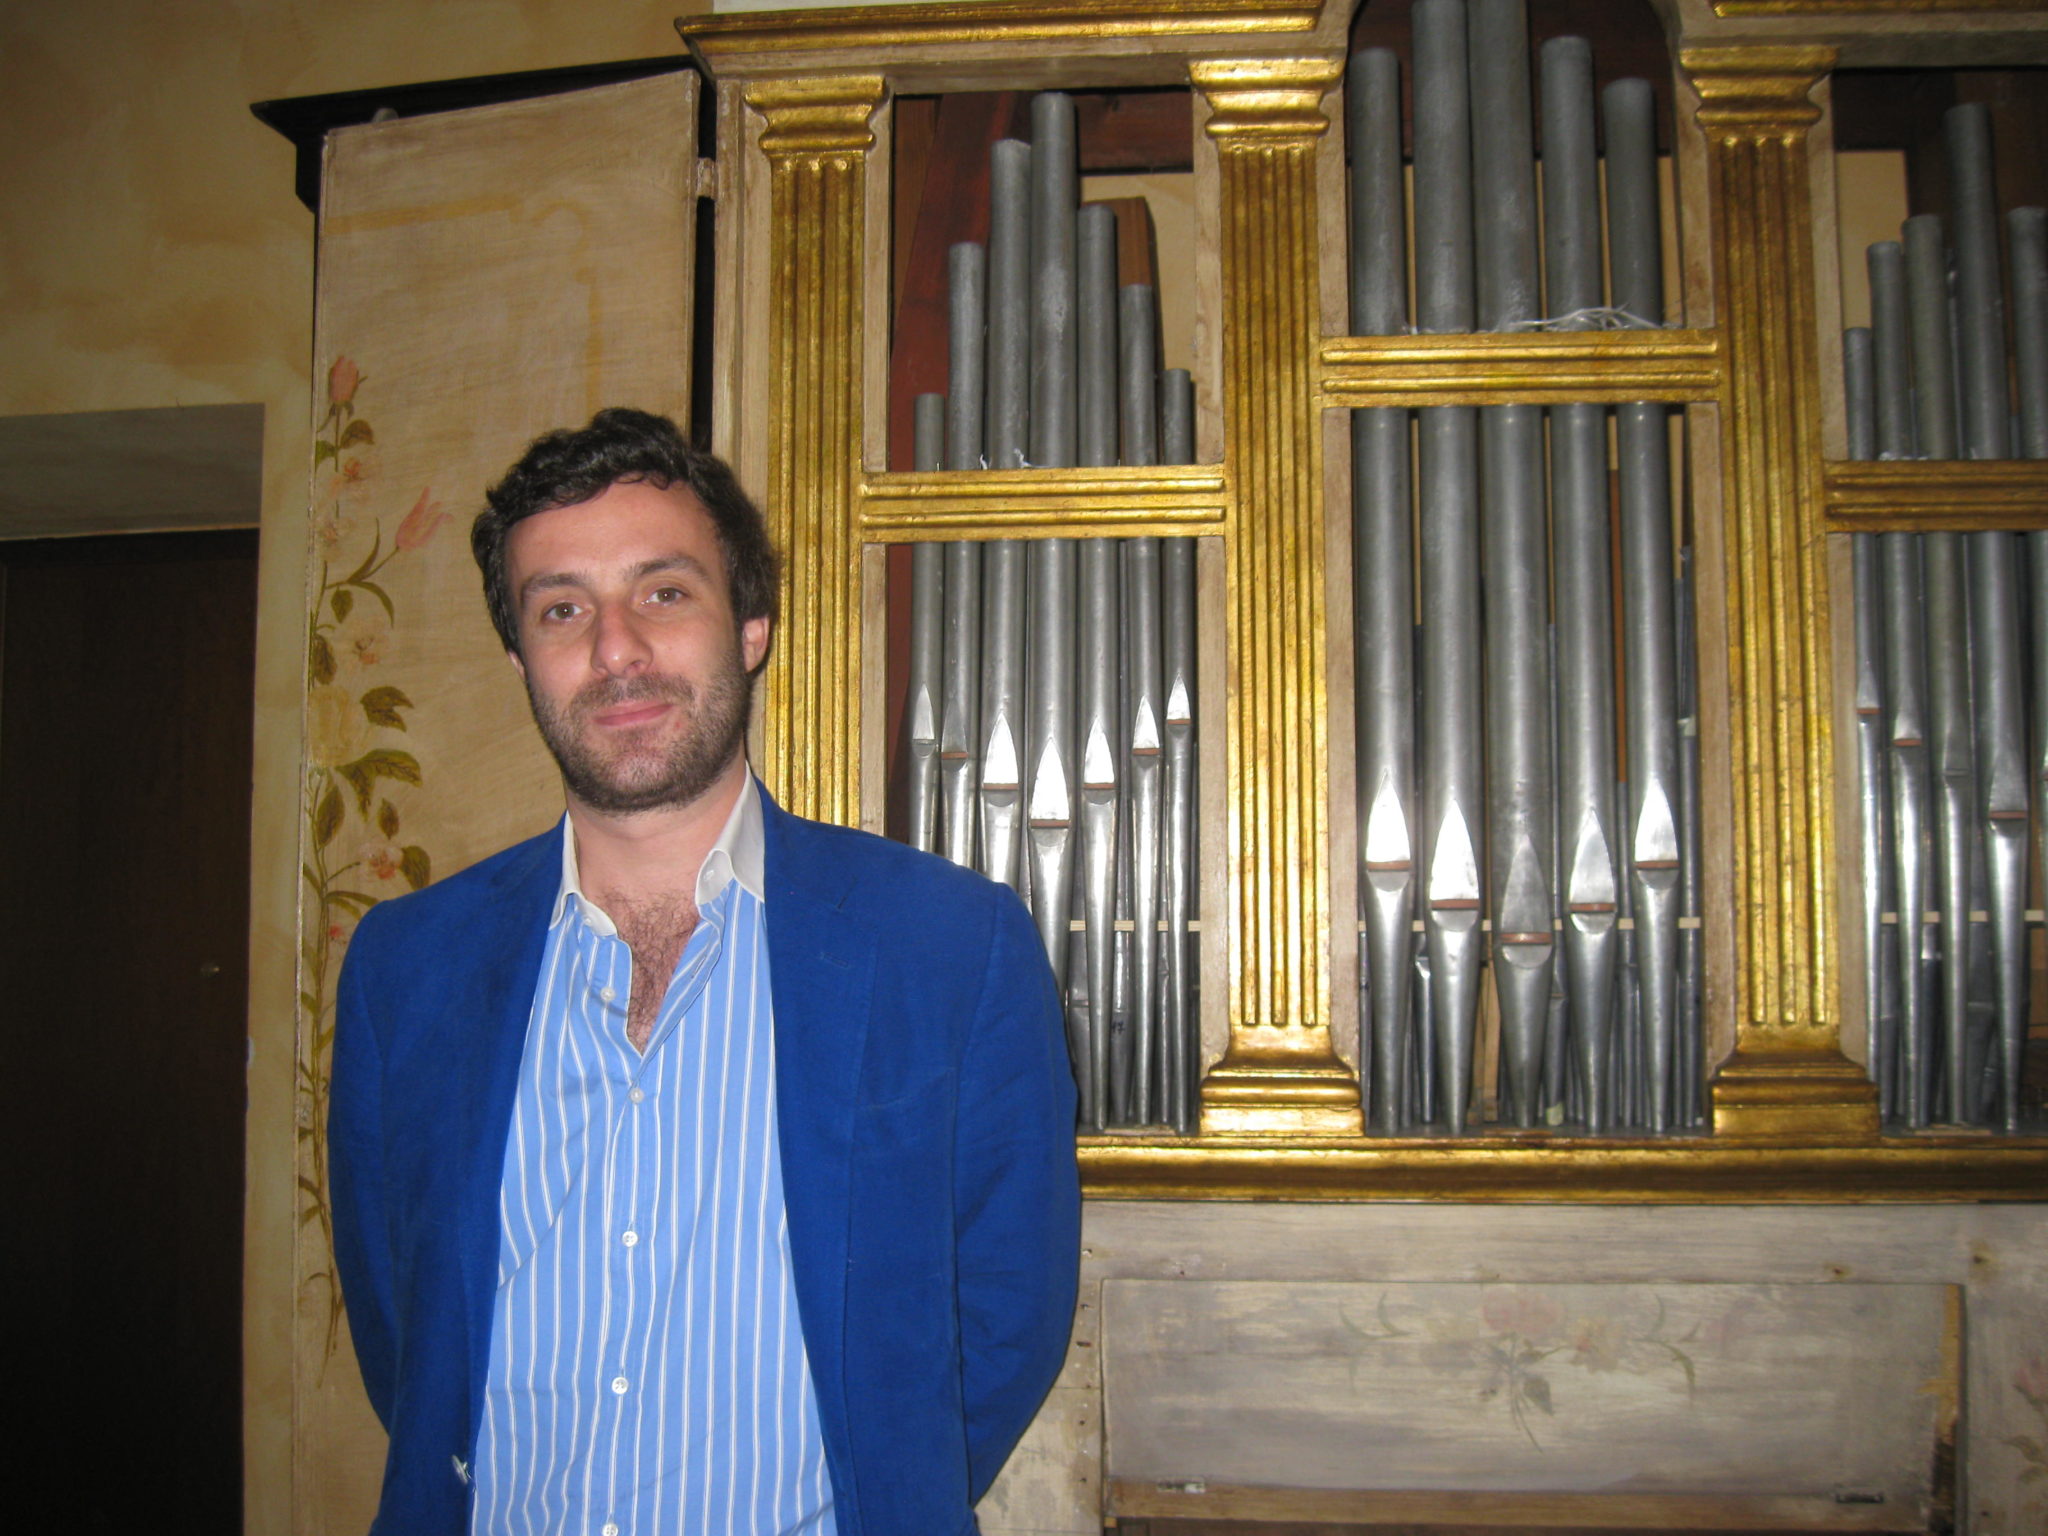 Orologi e strumenti musicali: Martino Lurani Cernuschi racconta la sua collezione